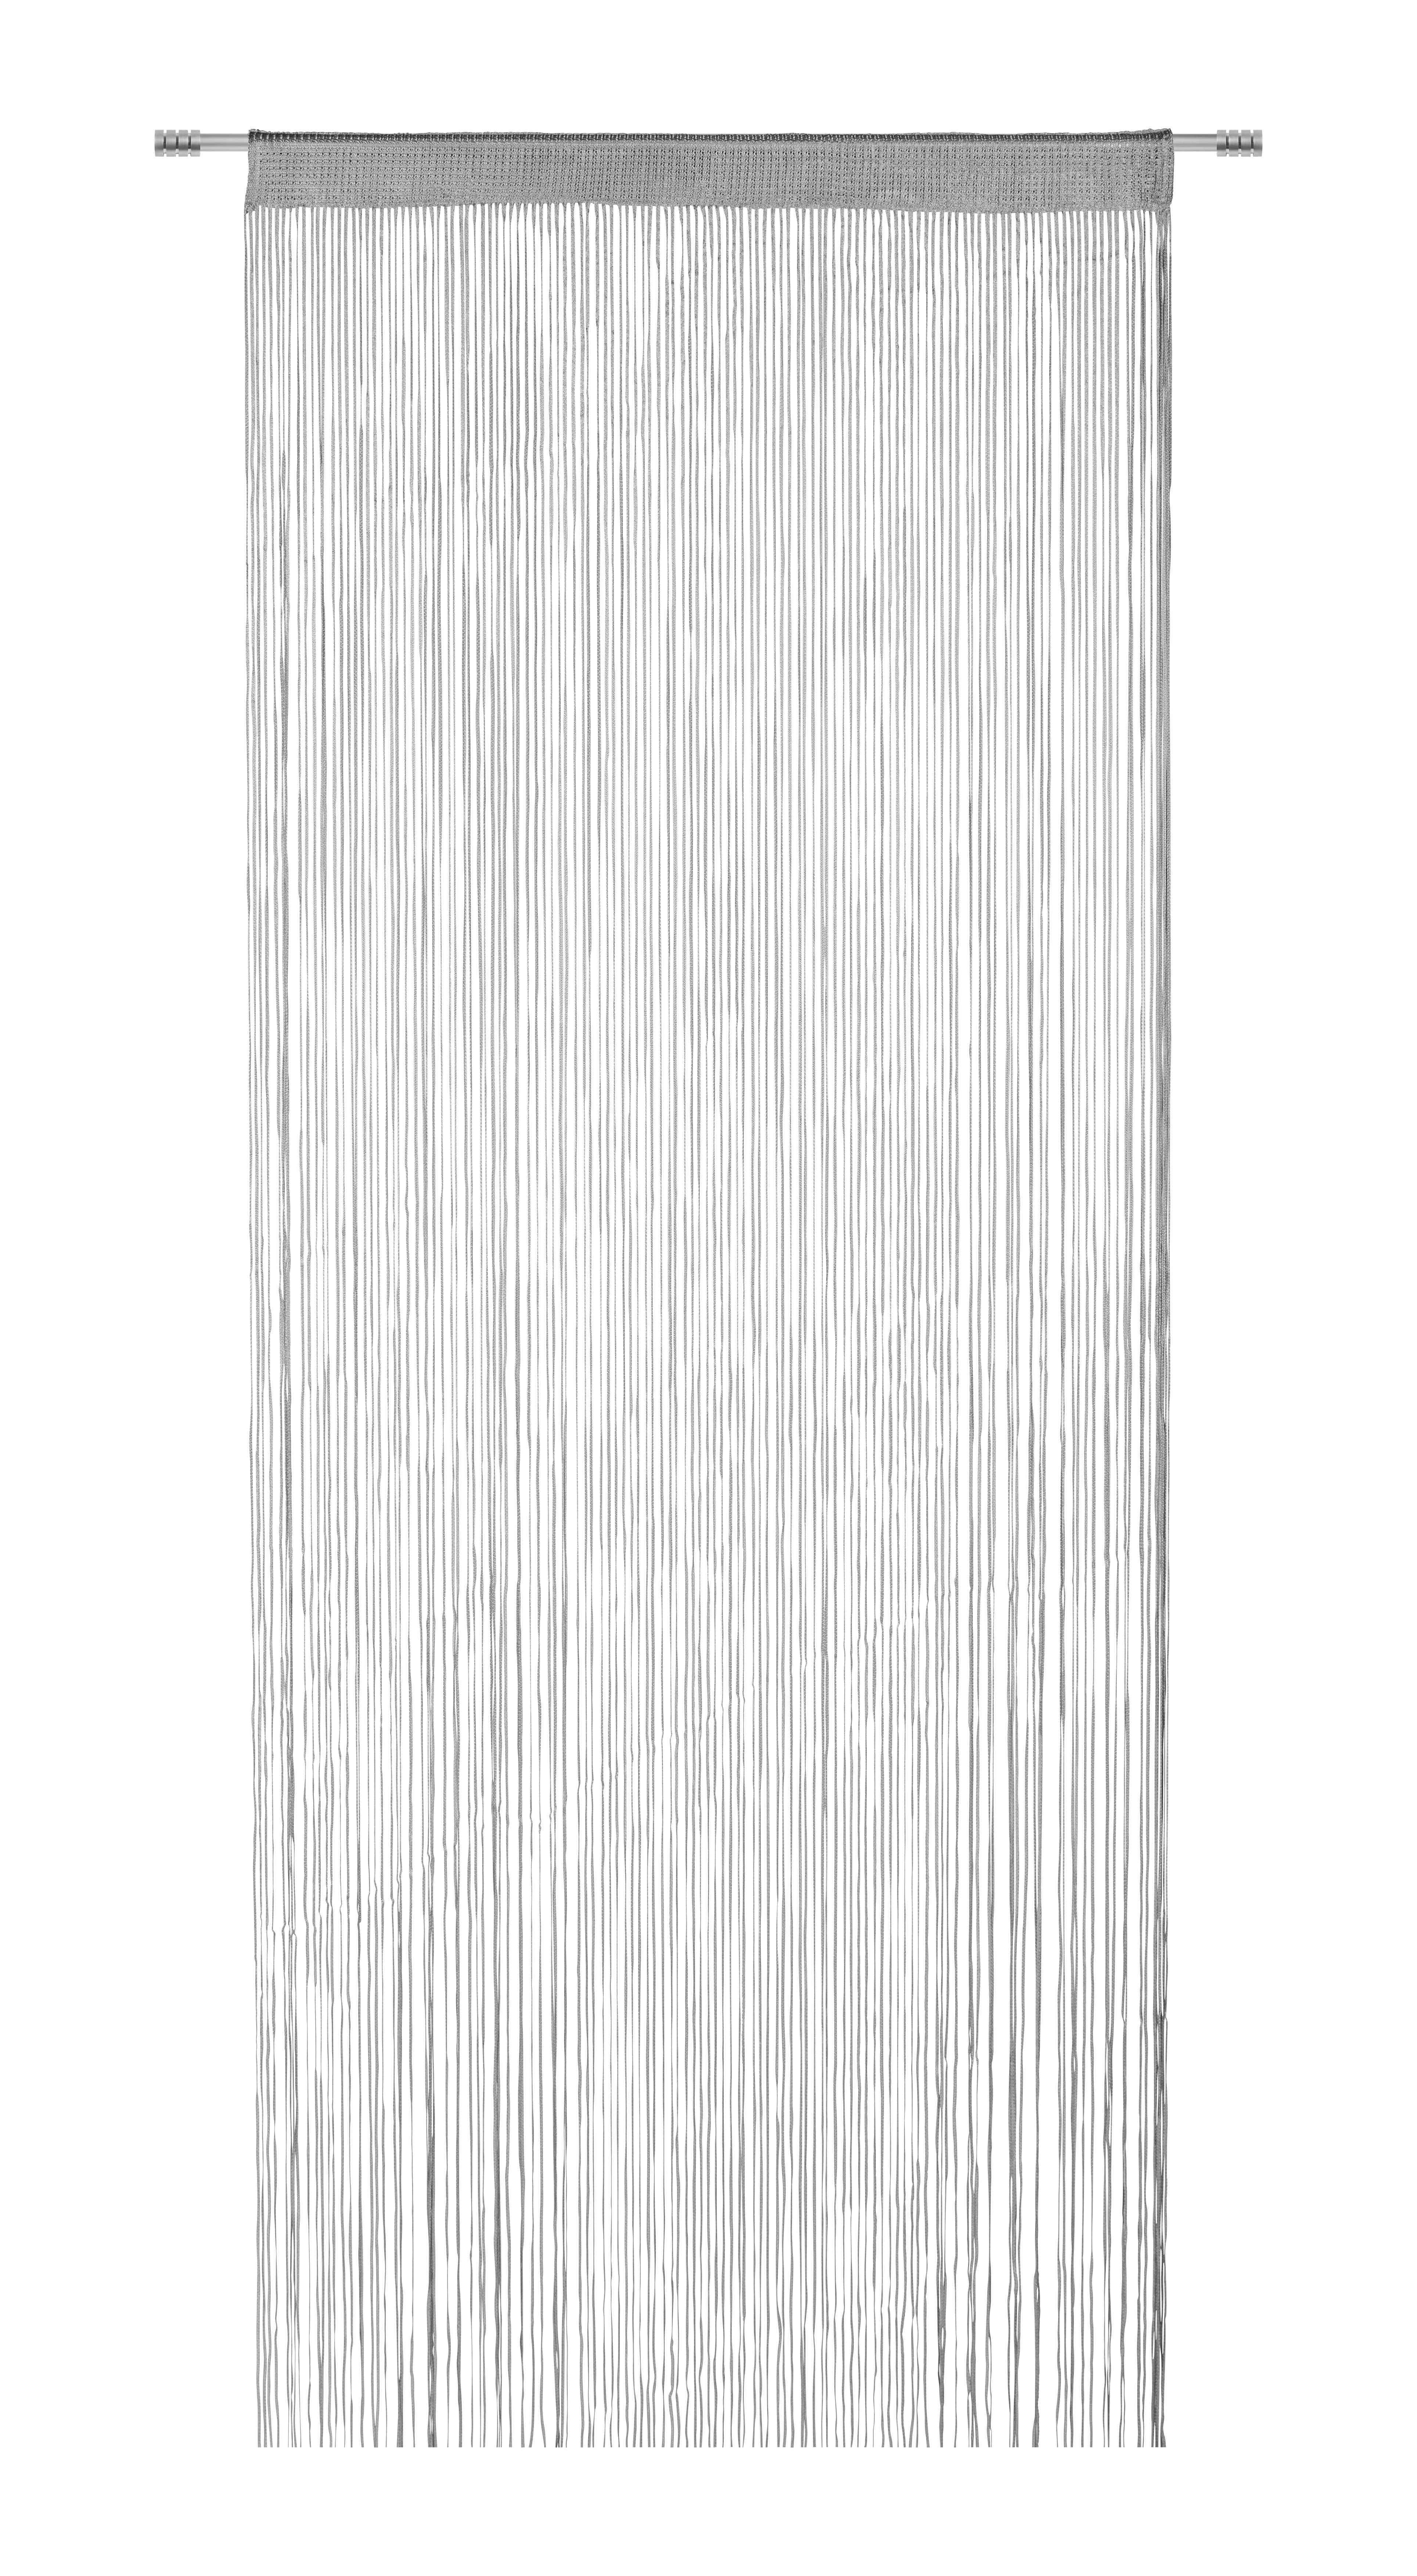 Provázkový Závěs String Uni, 90/250cm, Stříbrná - barvy stříbra, Konvenční, textil (90/250cm) - Premium Living